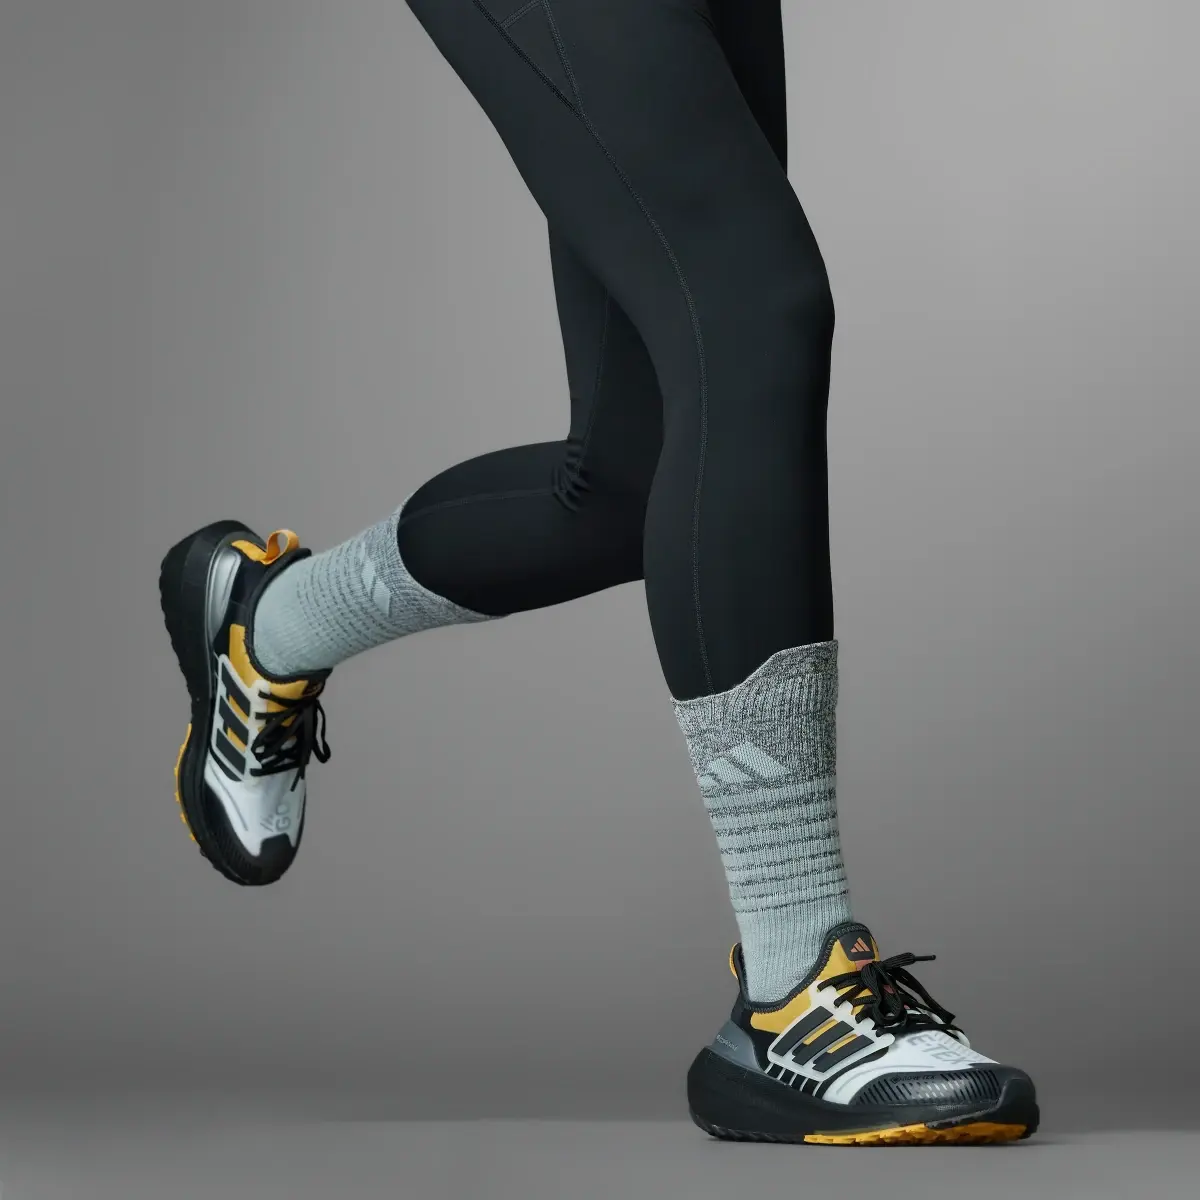 Adidas Ultraboost Light GORE-TEX Running Shoes. 1